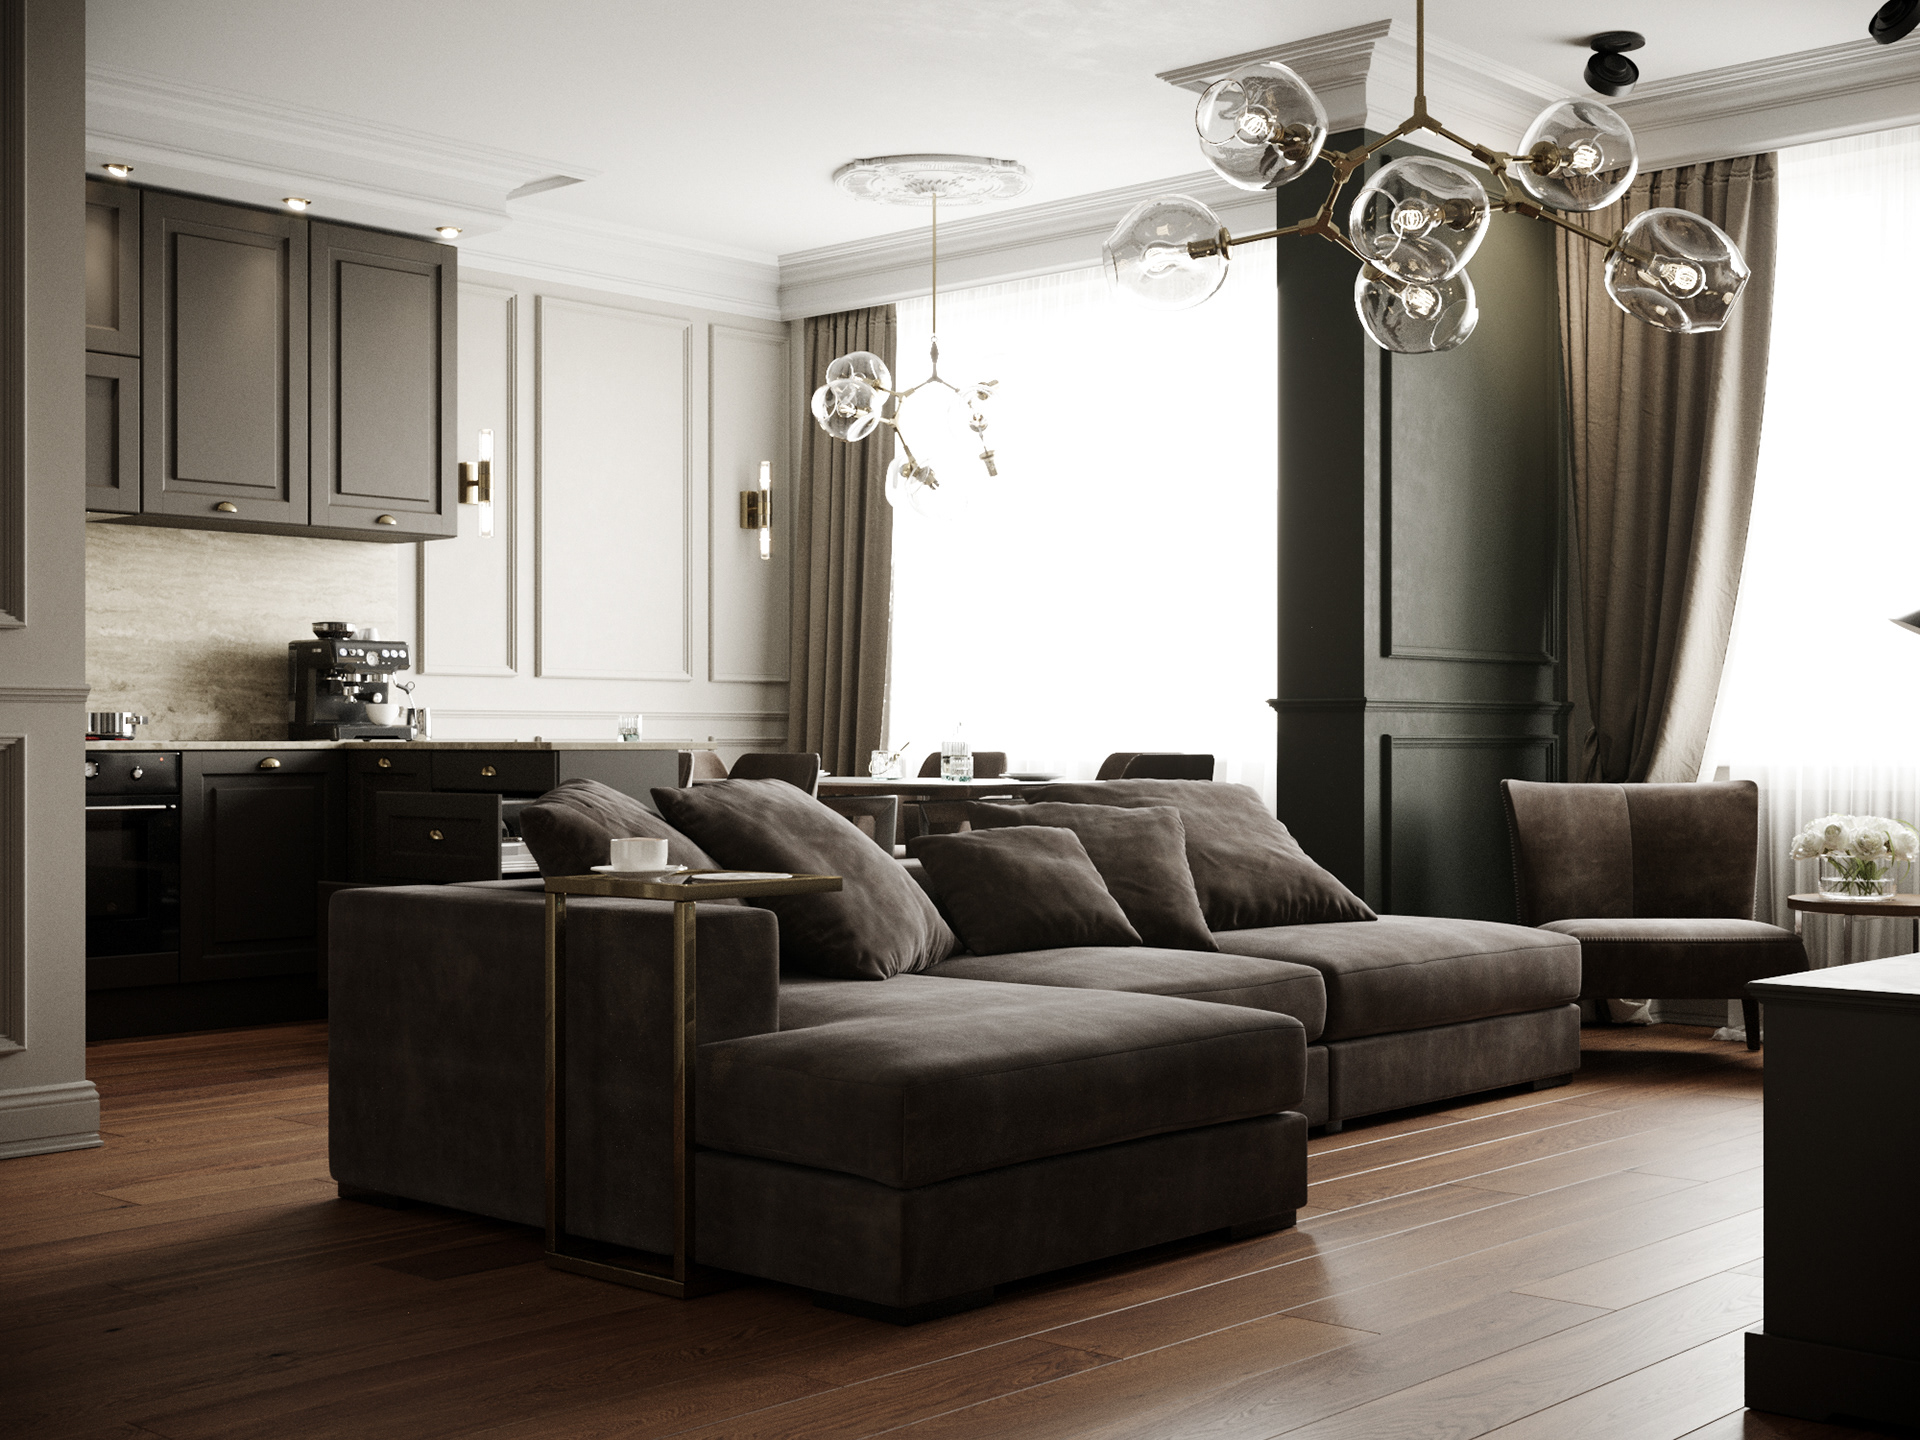 Modern living room on Behance